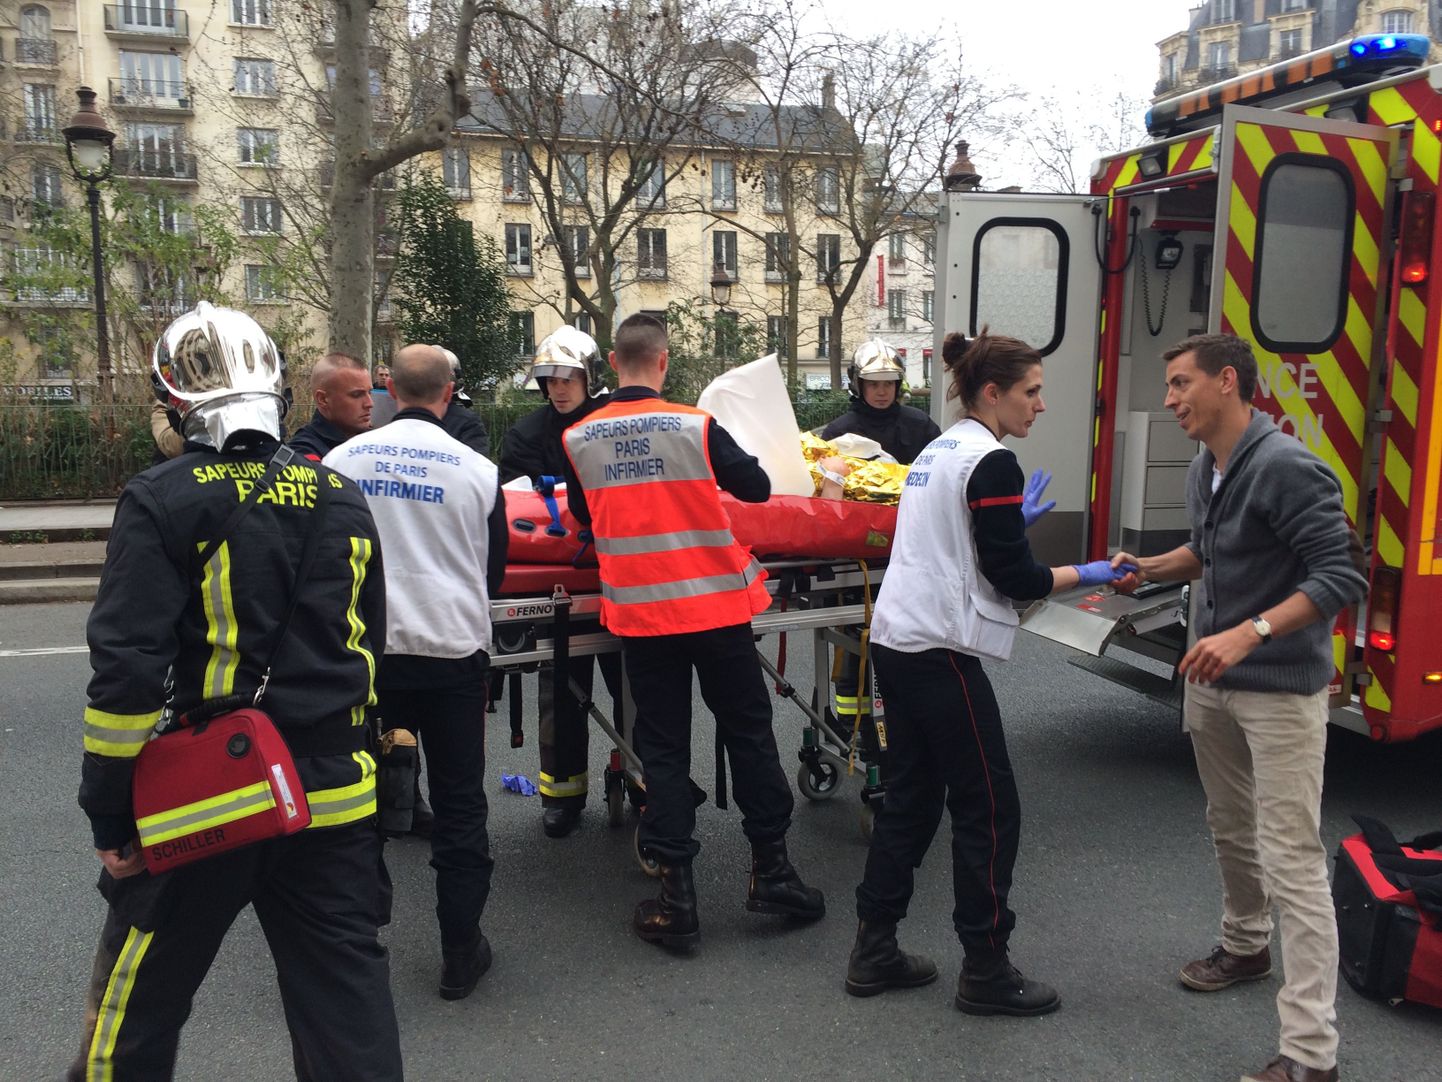 Tulistamine Pariisis satiirilise nädalalehe Charlie Hebdo toimetuses nõudis inimelusid ja tõi kaasa suure politseioperatsiooni.